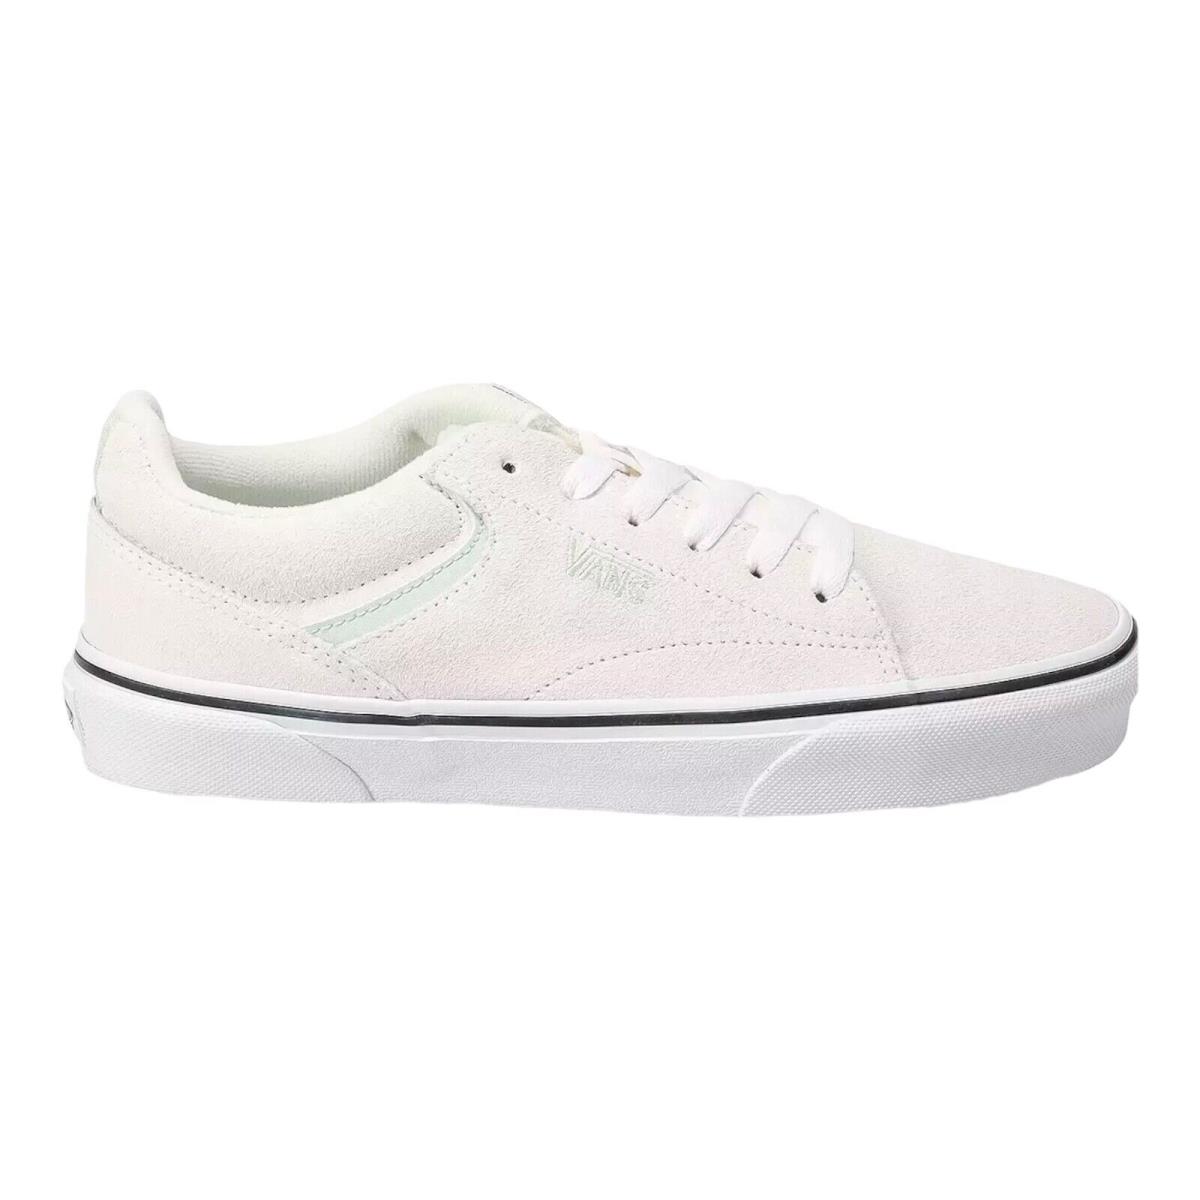 Vans Seldan Women`s Sneakers - Suede White/mint Size 5.5 6.5 7.5 8 8.5